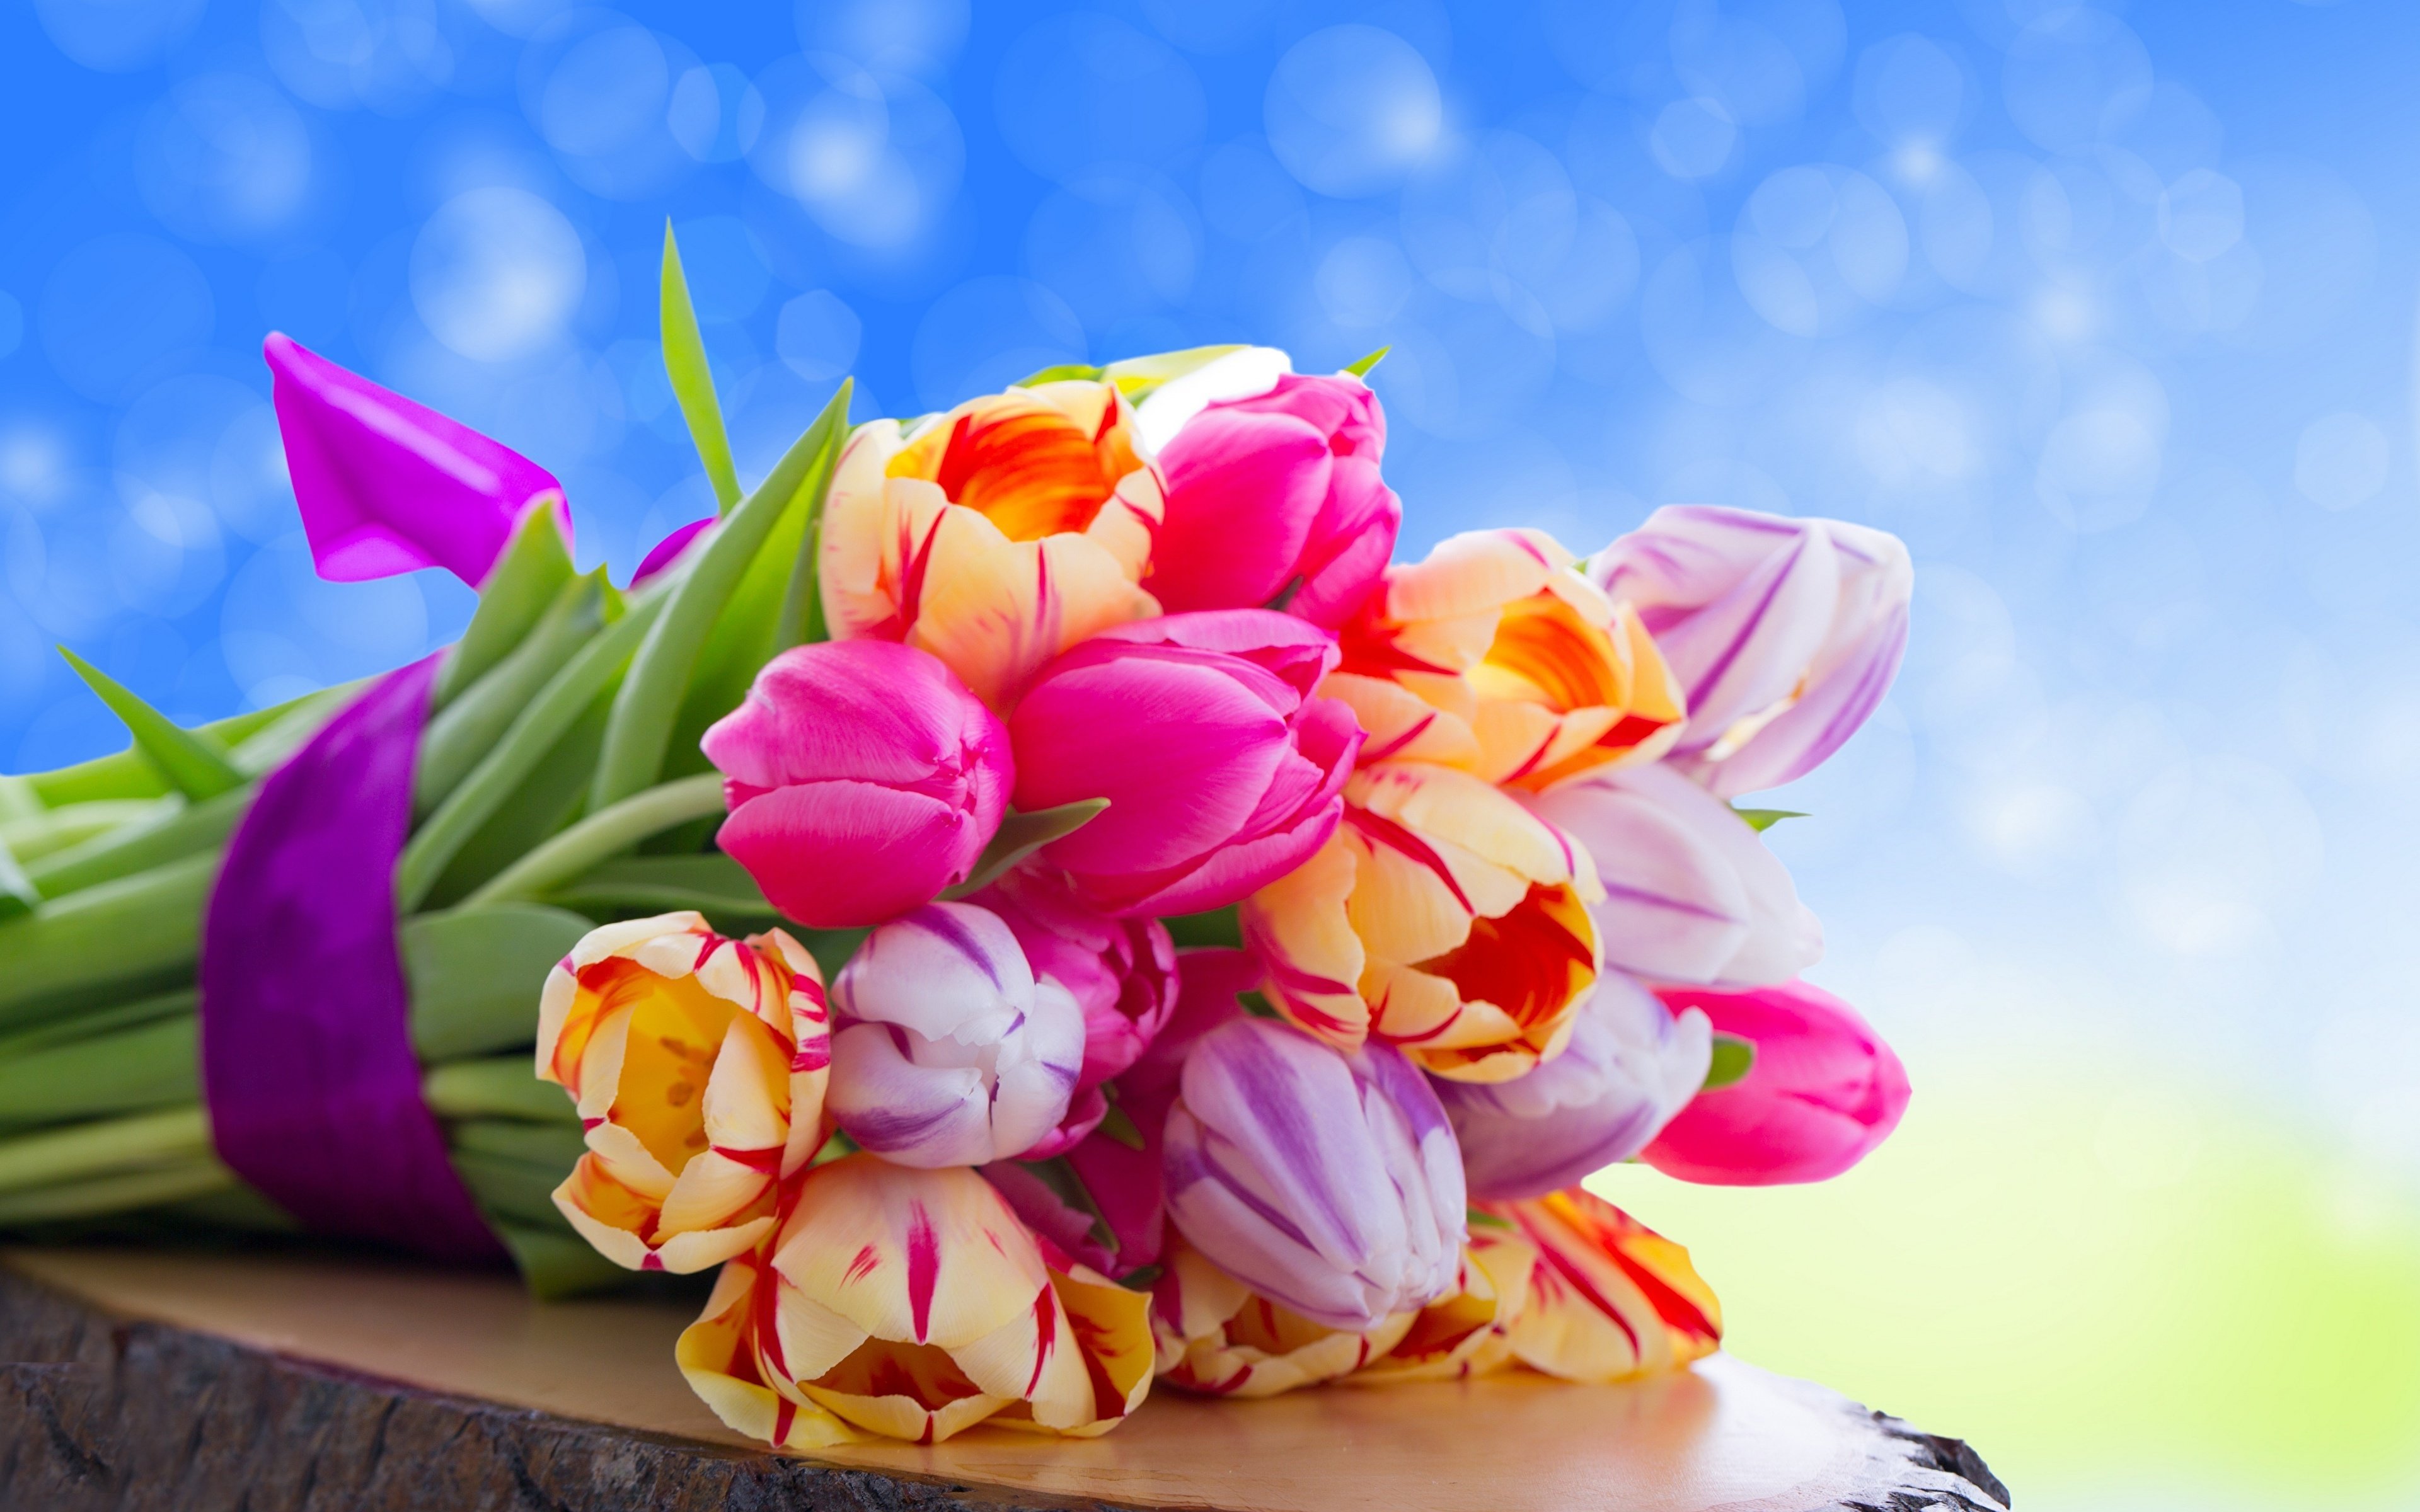 Картинка с днем рождения женщине в марте. Букет тюльпанов. Яркие тюльпаны. Весенний букет. Красивый весенний букет.